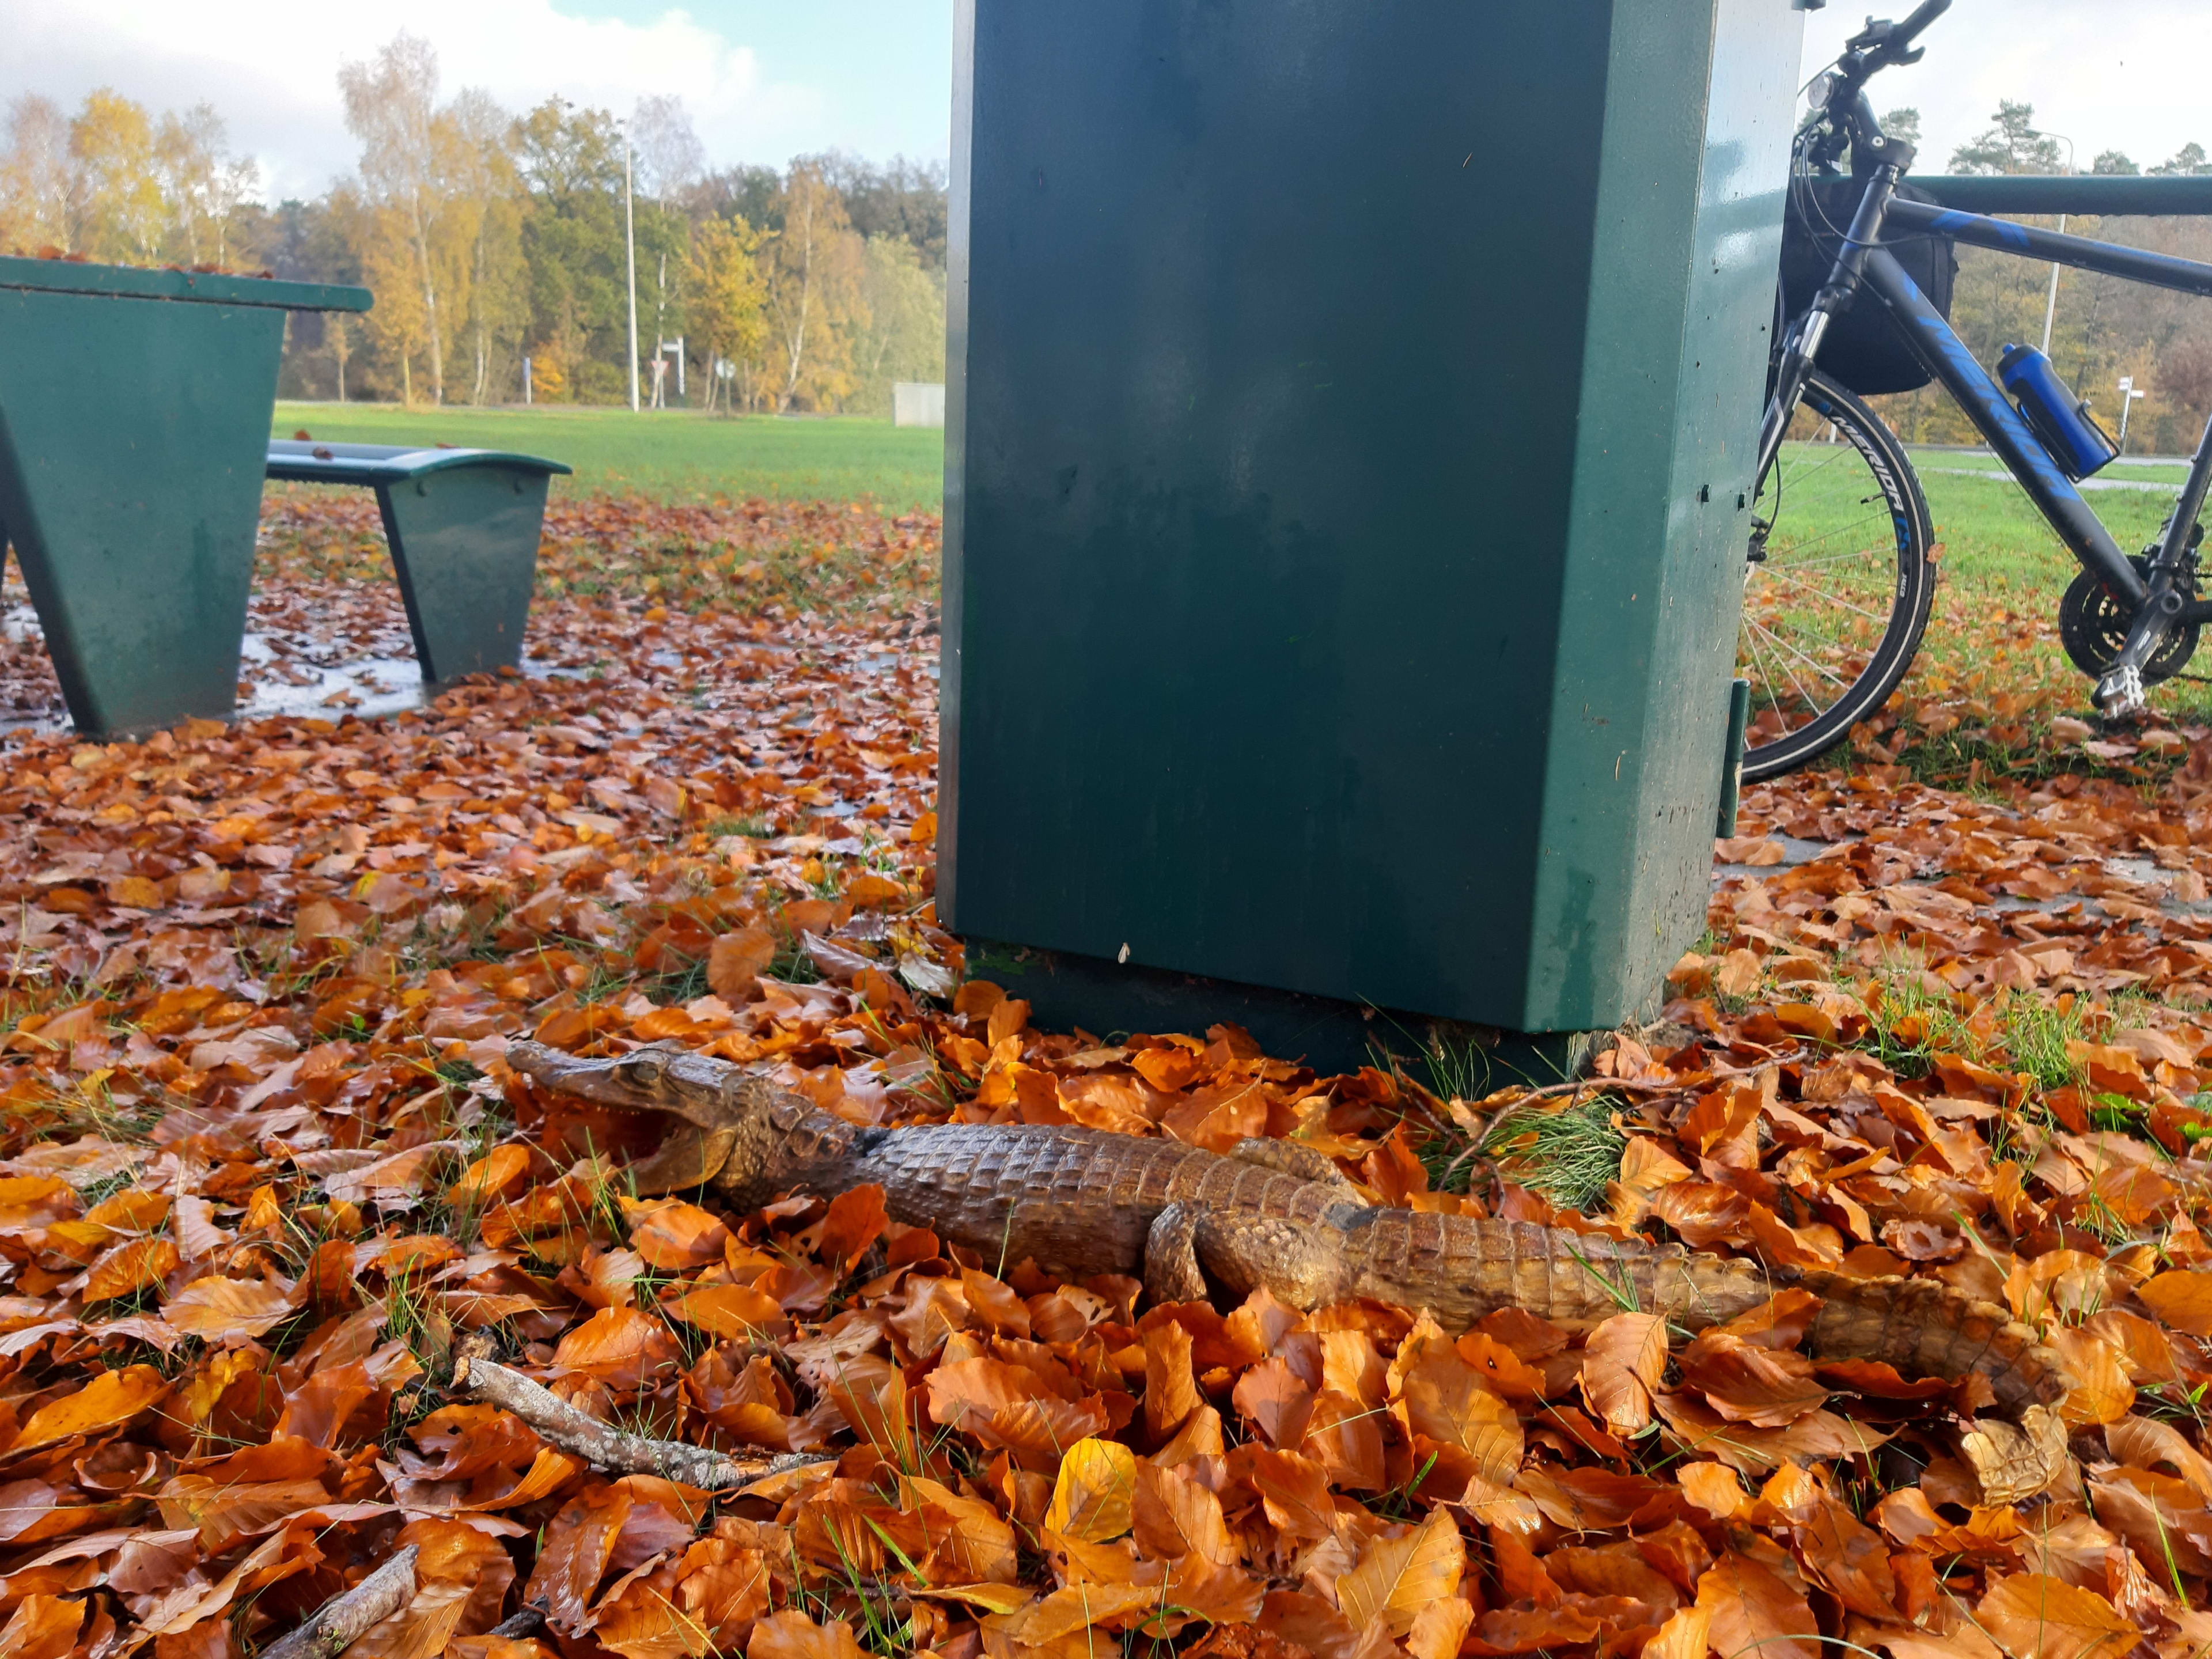 Rudi vindt tijdens fietsen meter lange kaaiman tussen bladeren